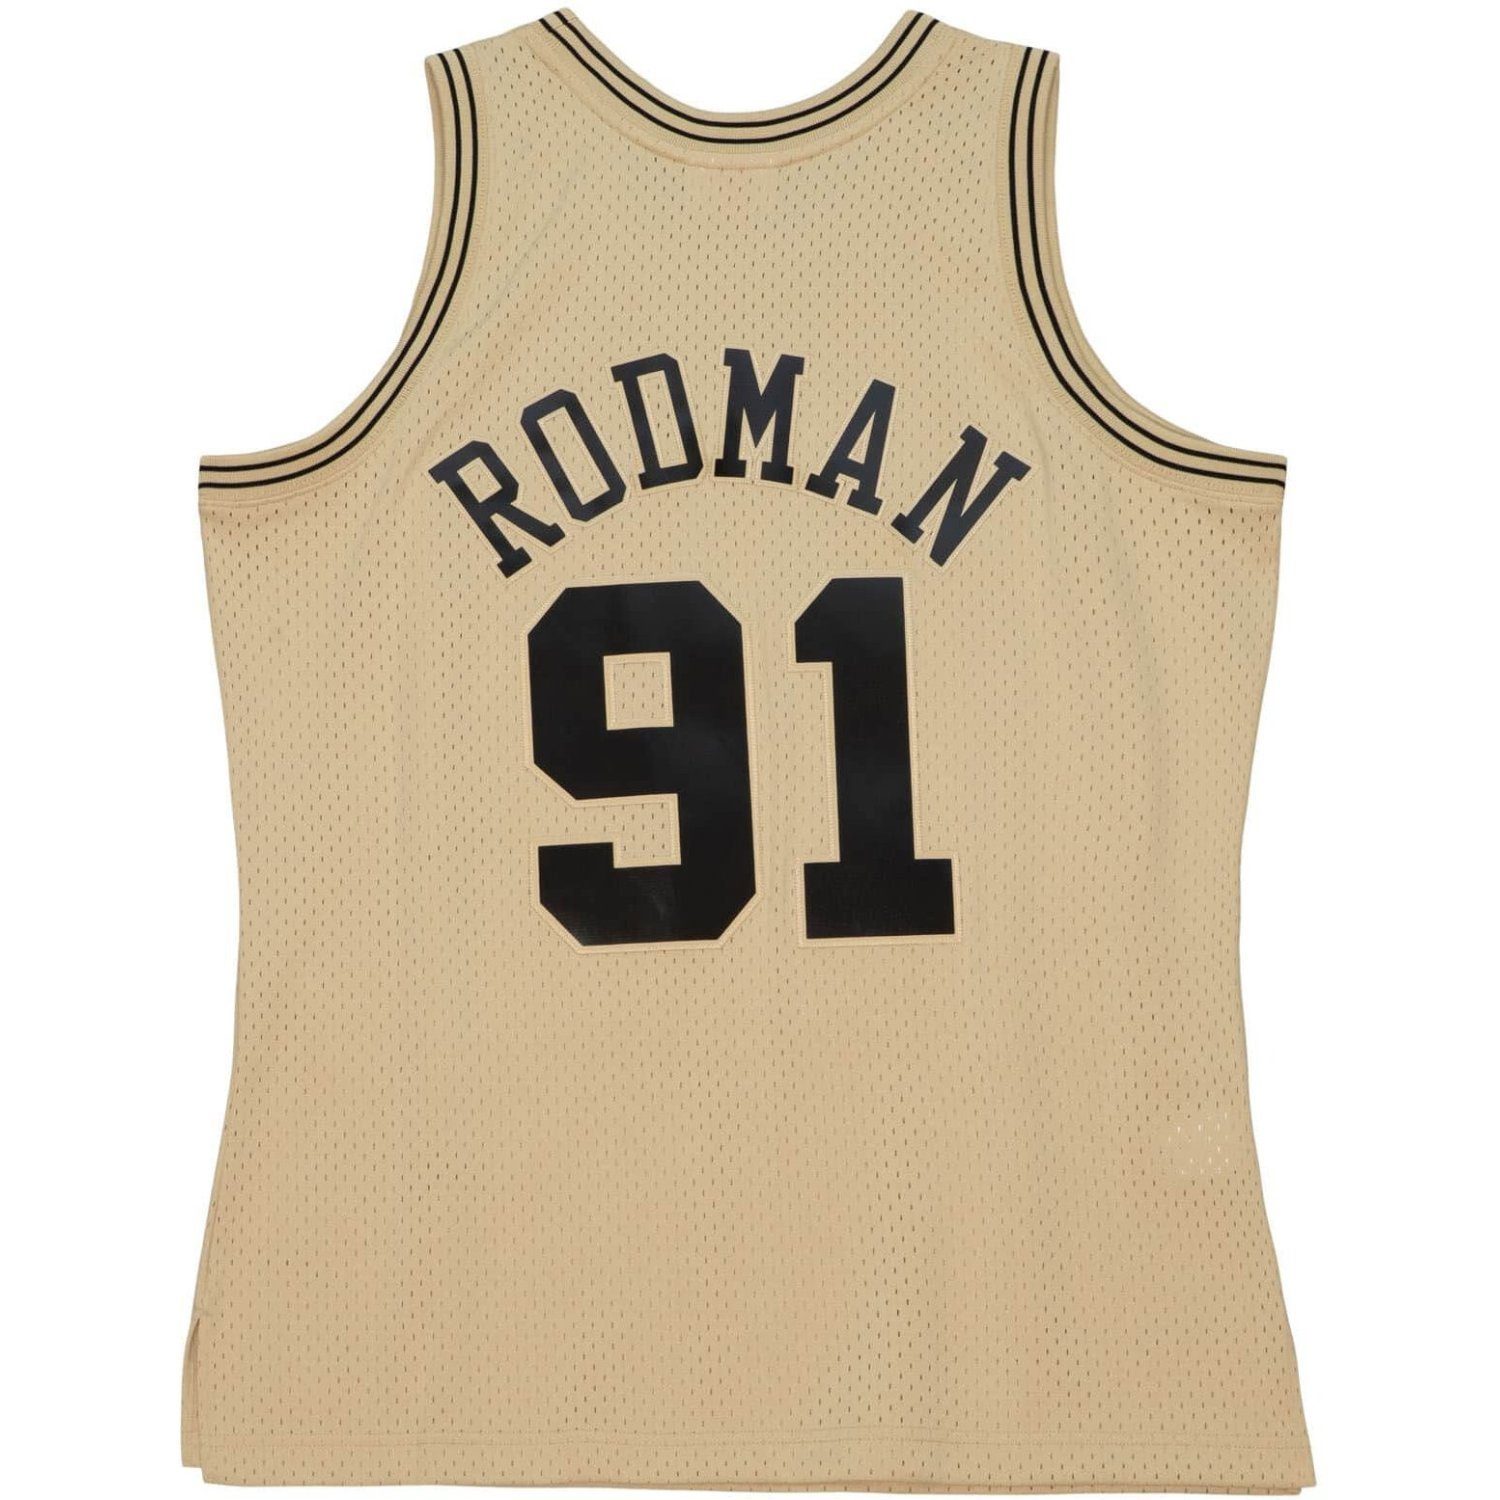 Rodman Trikot online kaufen